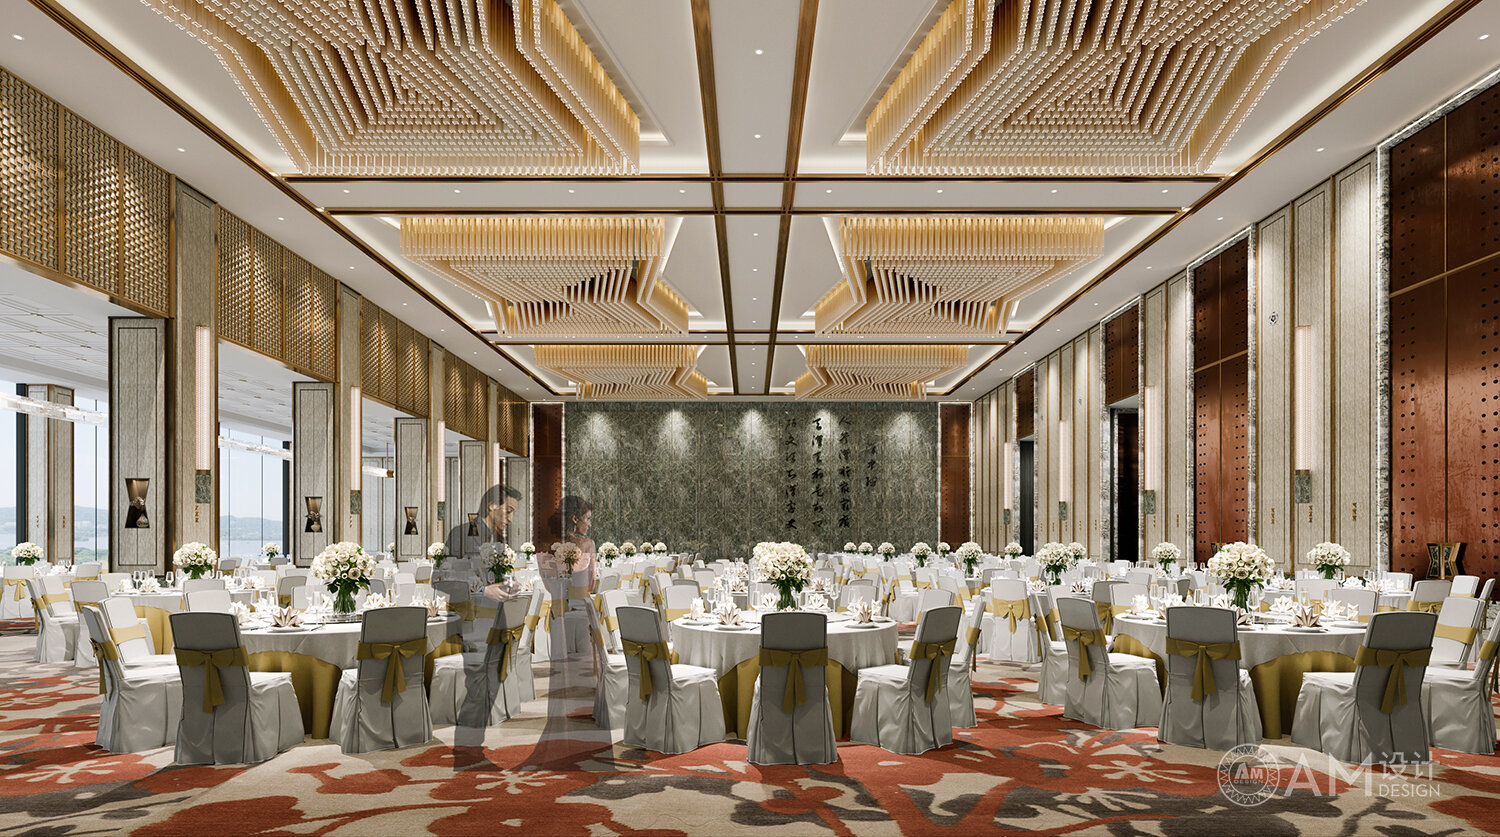 AM DESIGN | Banquet hall design of Shaanxi Nanhu Hotel